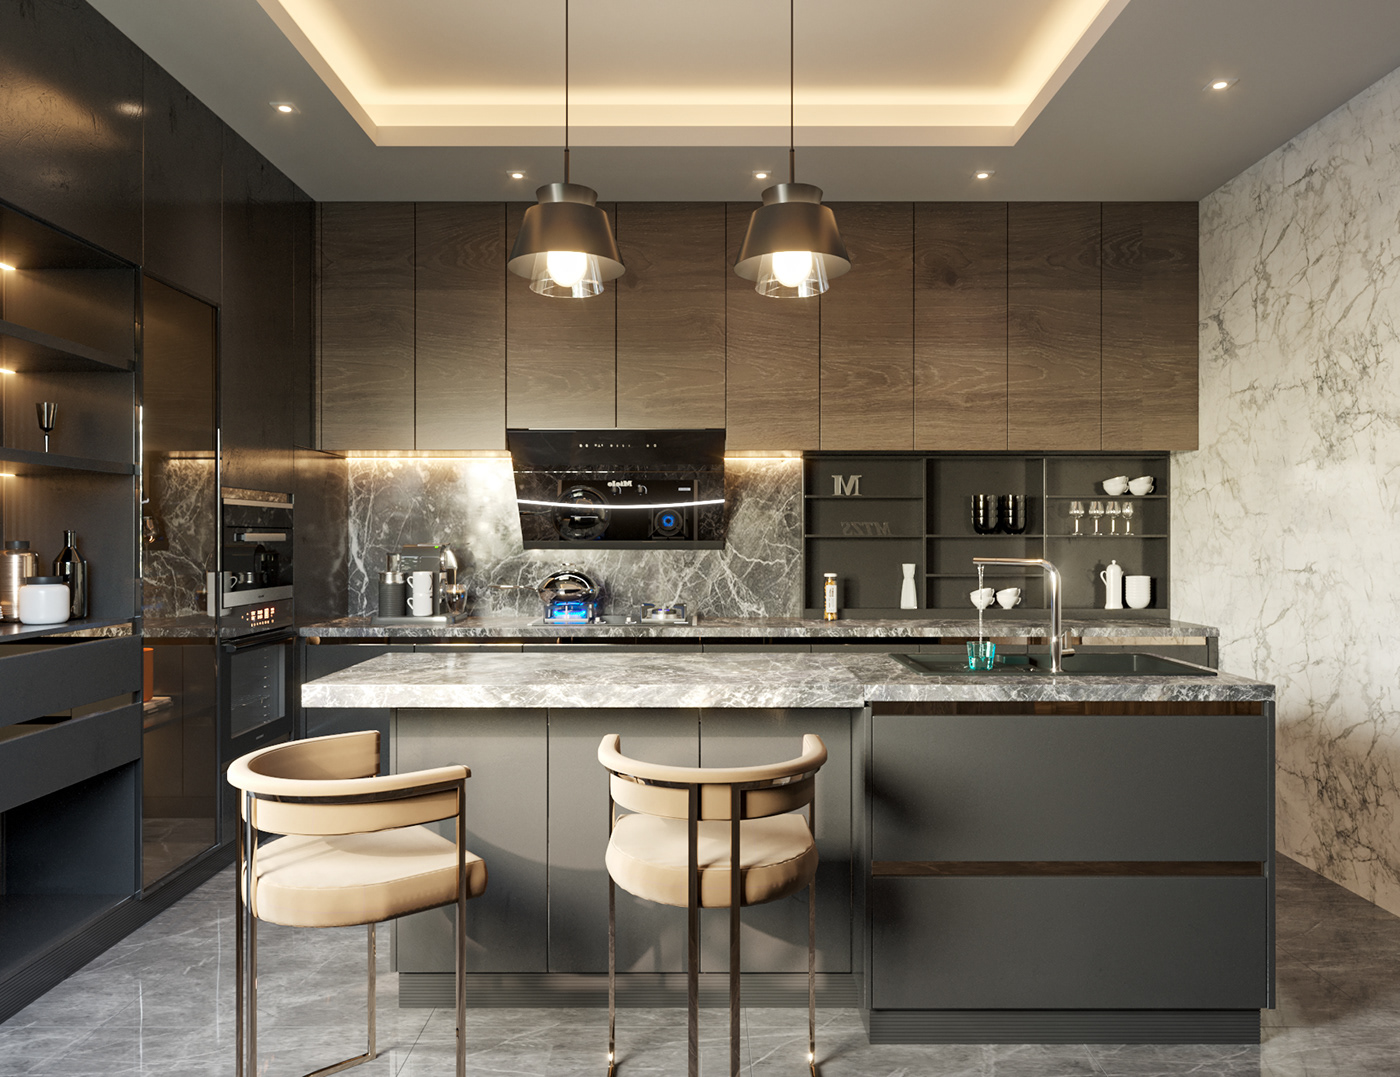 kitchen kitchen design KITCHENWARE kitchendesign kitchens interior design  architecture Render visualization 3D